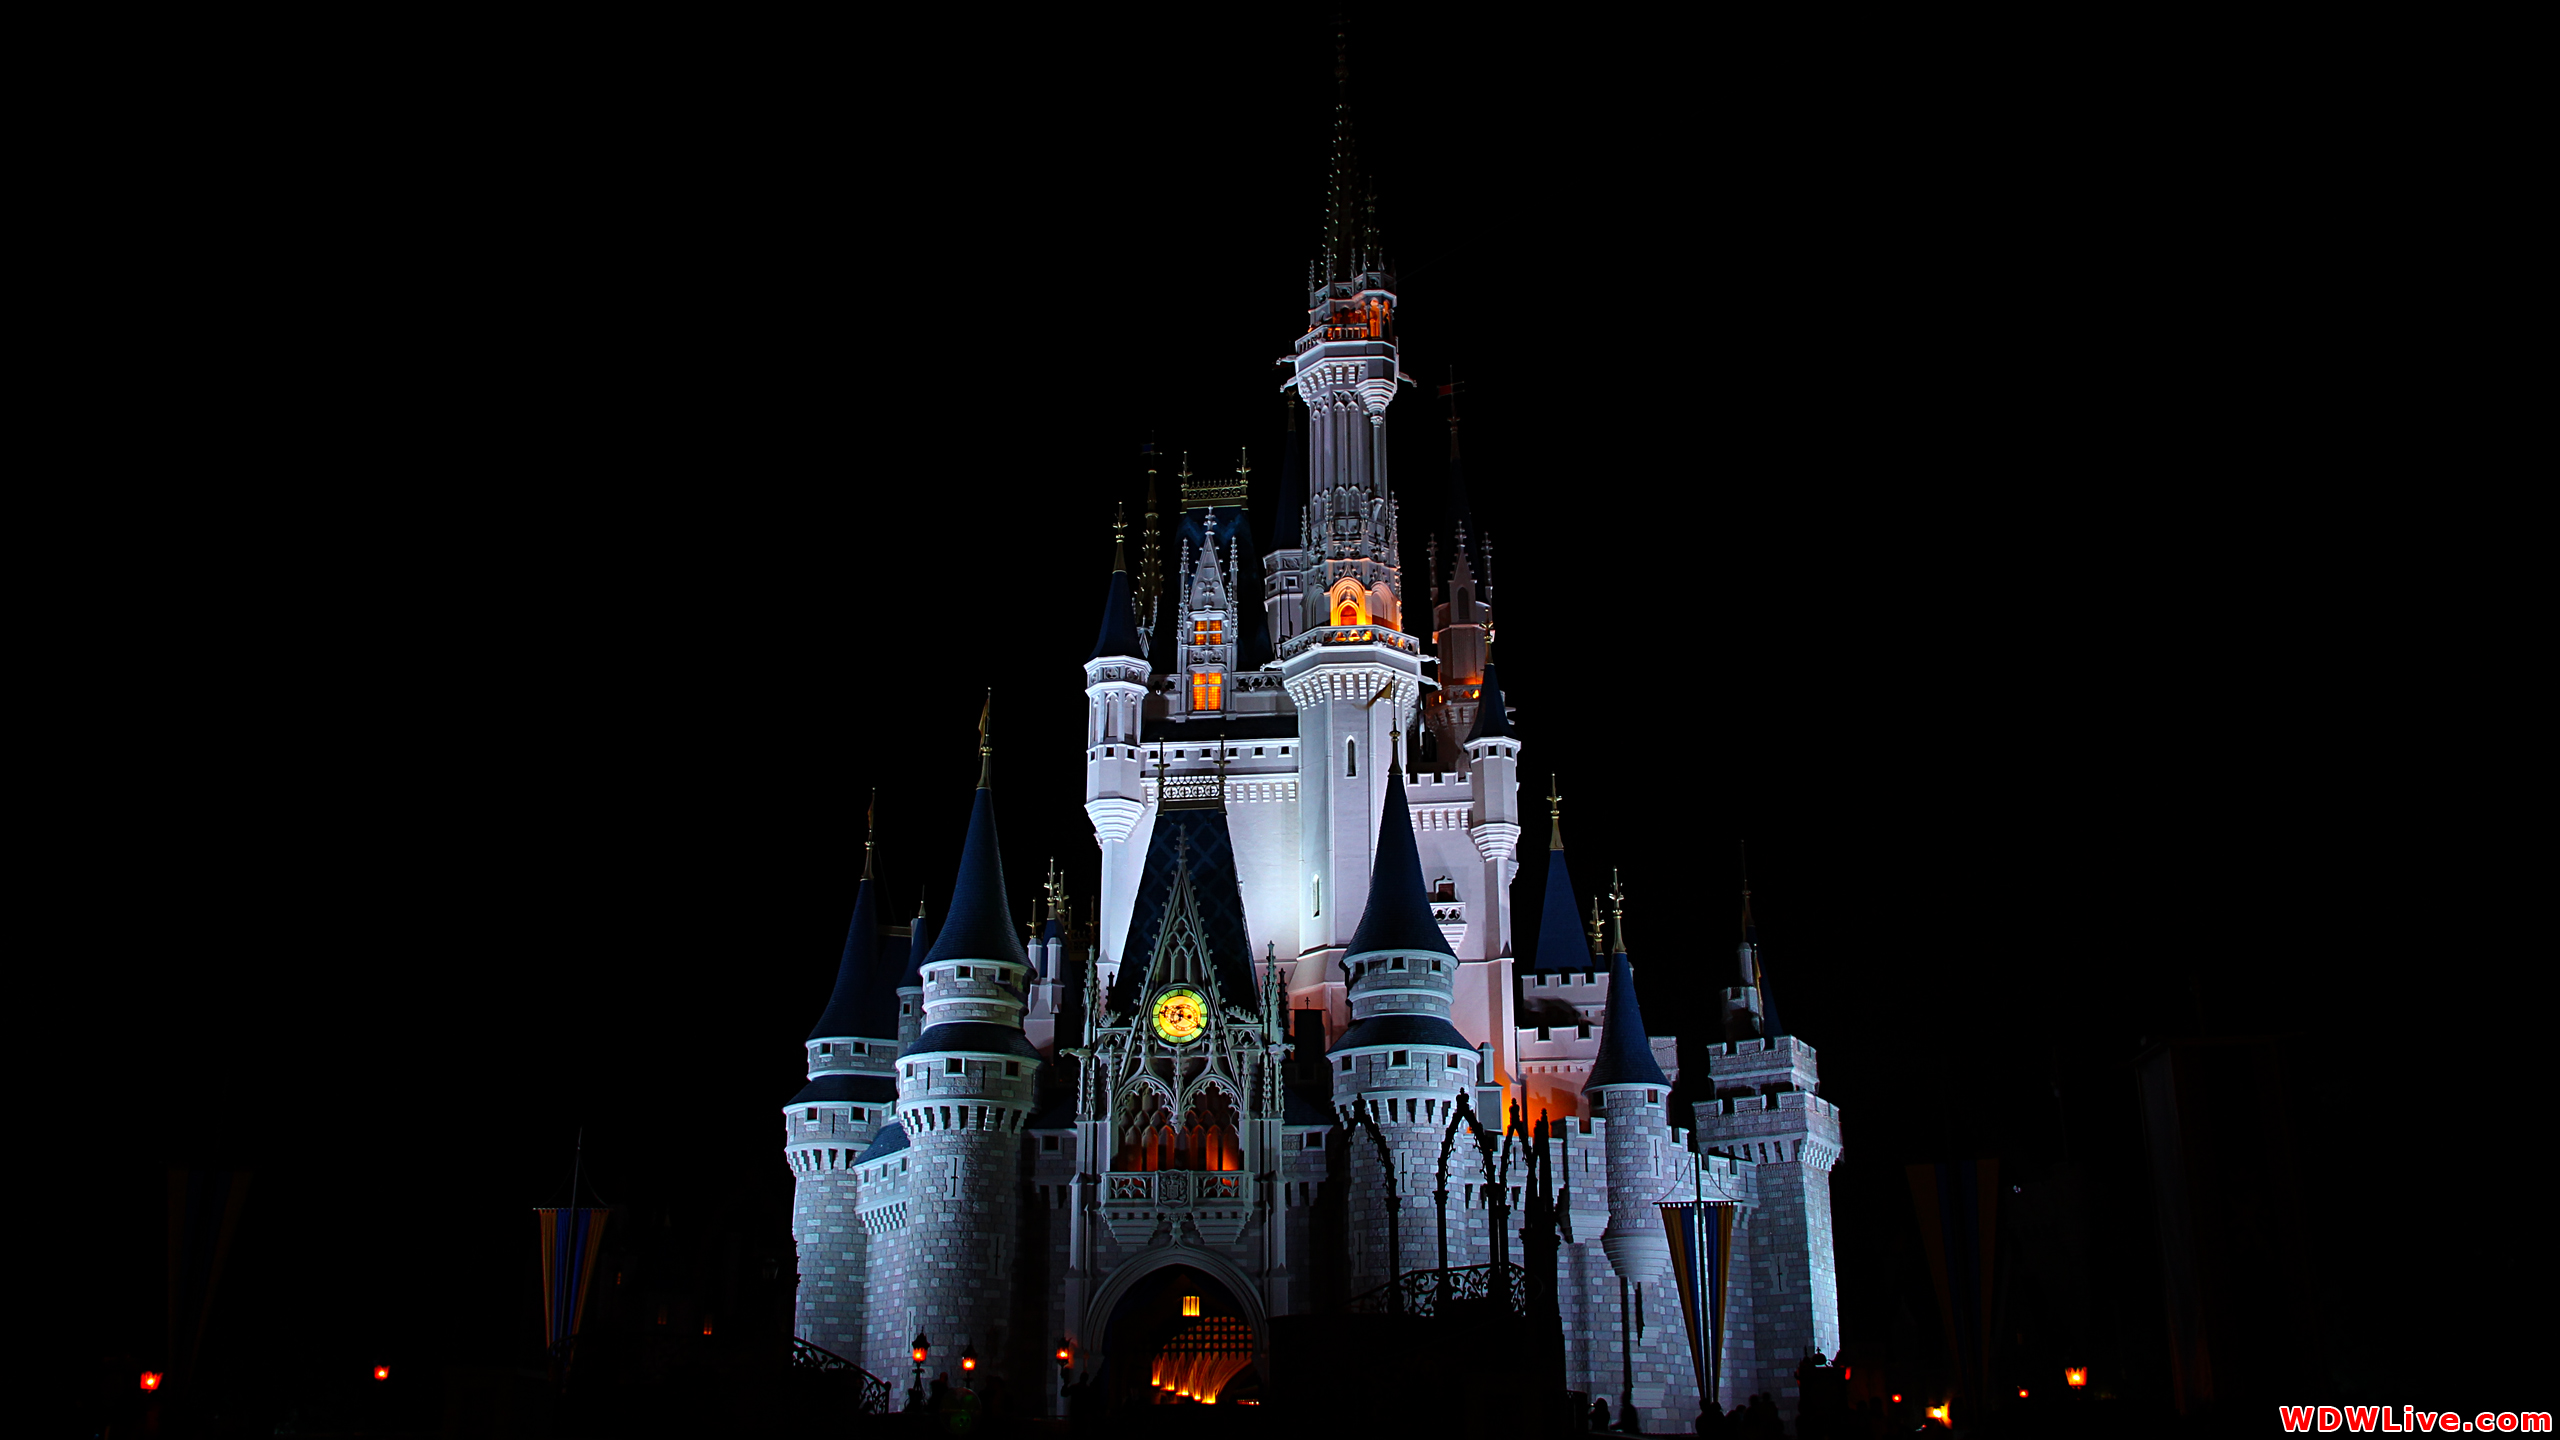 Cinderella Castle: Classic nighttime photo of Cinderella Castle!